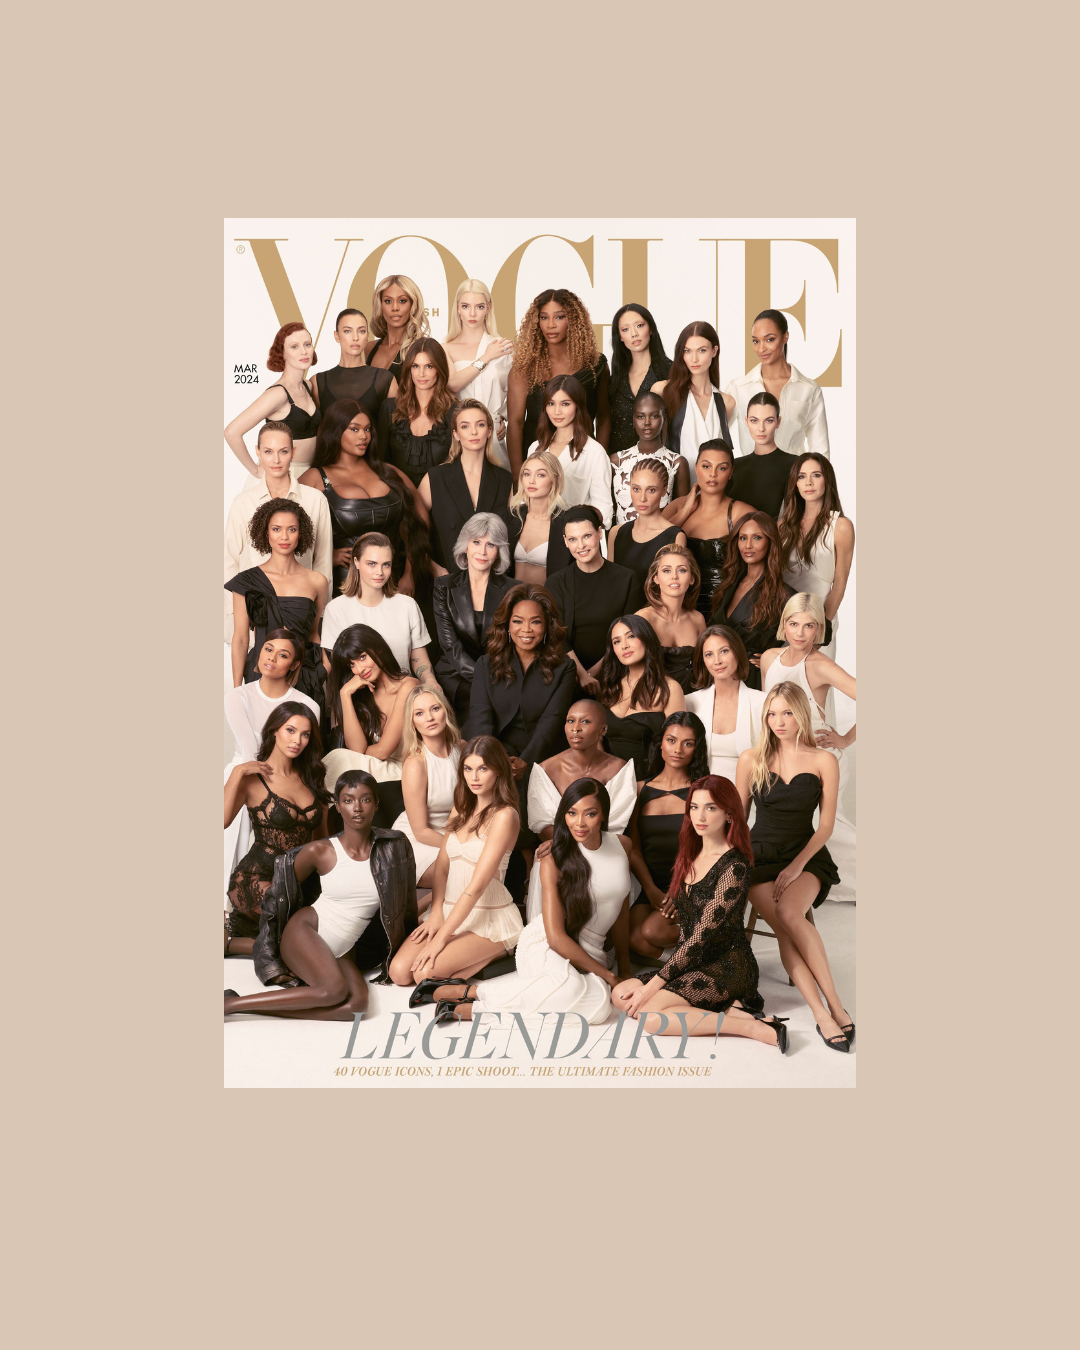 40 ผู้หญิงระดับตำนาน บนปก Vogue British ฉบับอำลาตำแหน่ง บก.บห.ของ Edward Enninful ที่ตั้งใจอุทิศ Vogue ฉบับสุดท้ายของเขาให้ “ผู้หญิง”